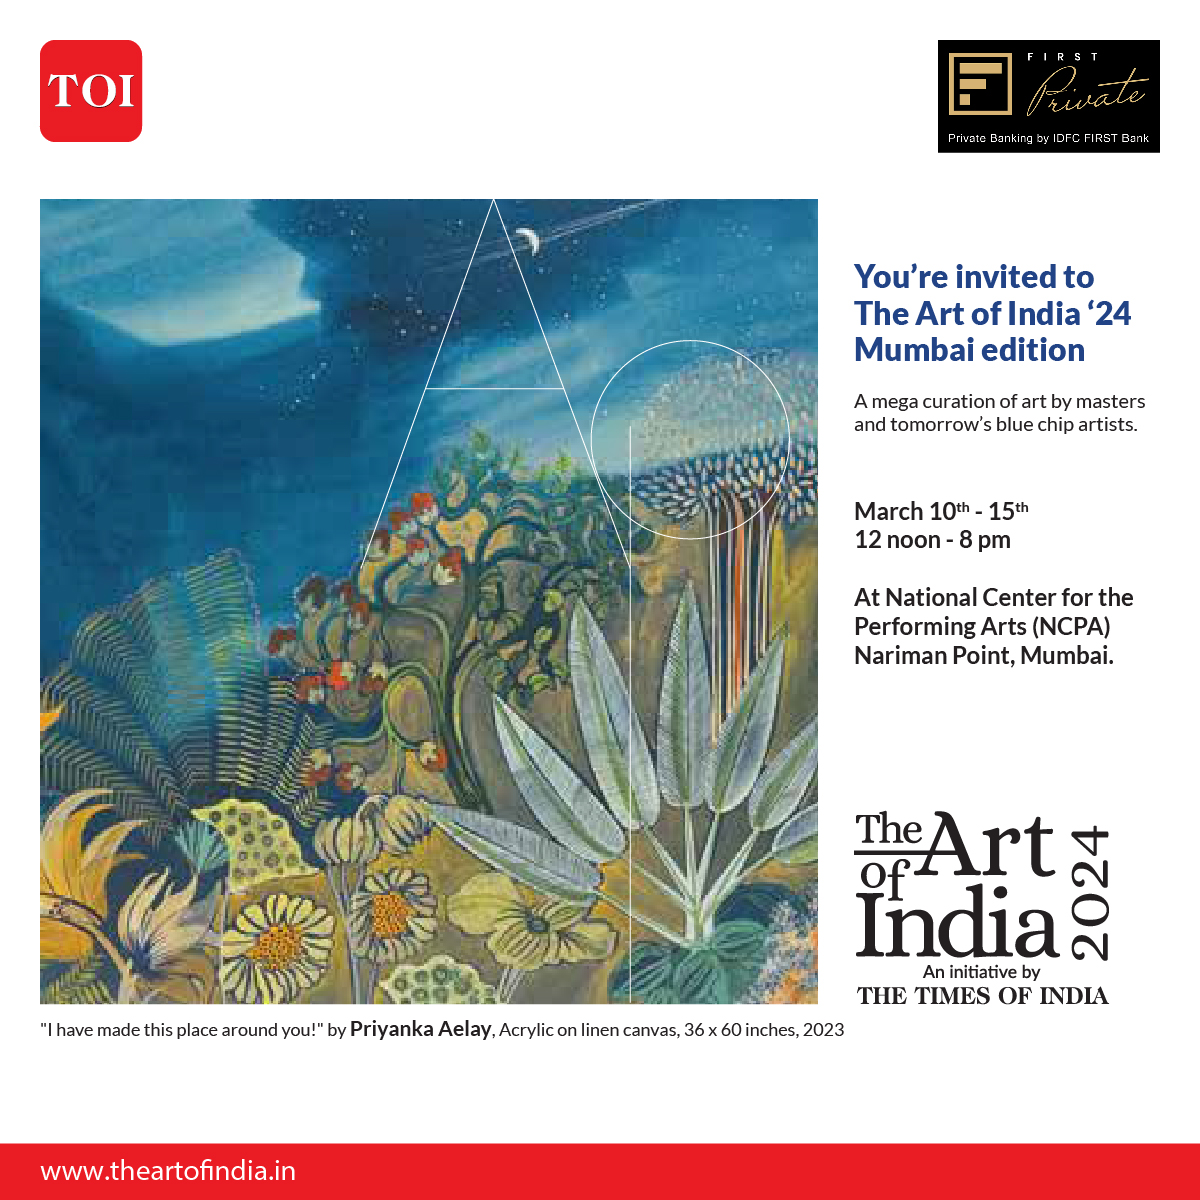 Explore the captivating artworks of Priyanka Aeley, Vishakha Hardikar, Vrindavan Solanki, and Gautham Manohar. 

Join us from 12 noon to 8 pm only at the NCPA, Nariman Point, Mumbai.

#IDFCFIRSTBank #AlwaysYouFirst #IDFCFIRSTPrivate #TheArtOfIndia2024 #TheArtOfIndia #TOI